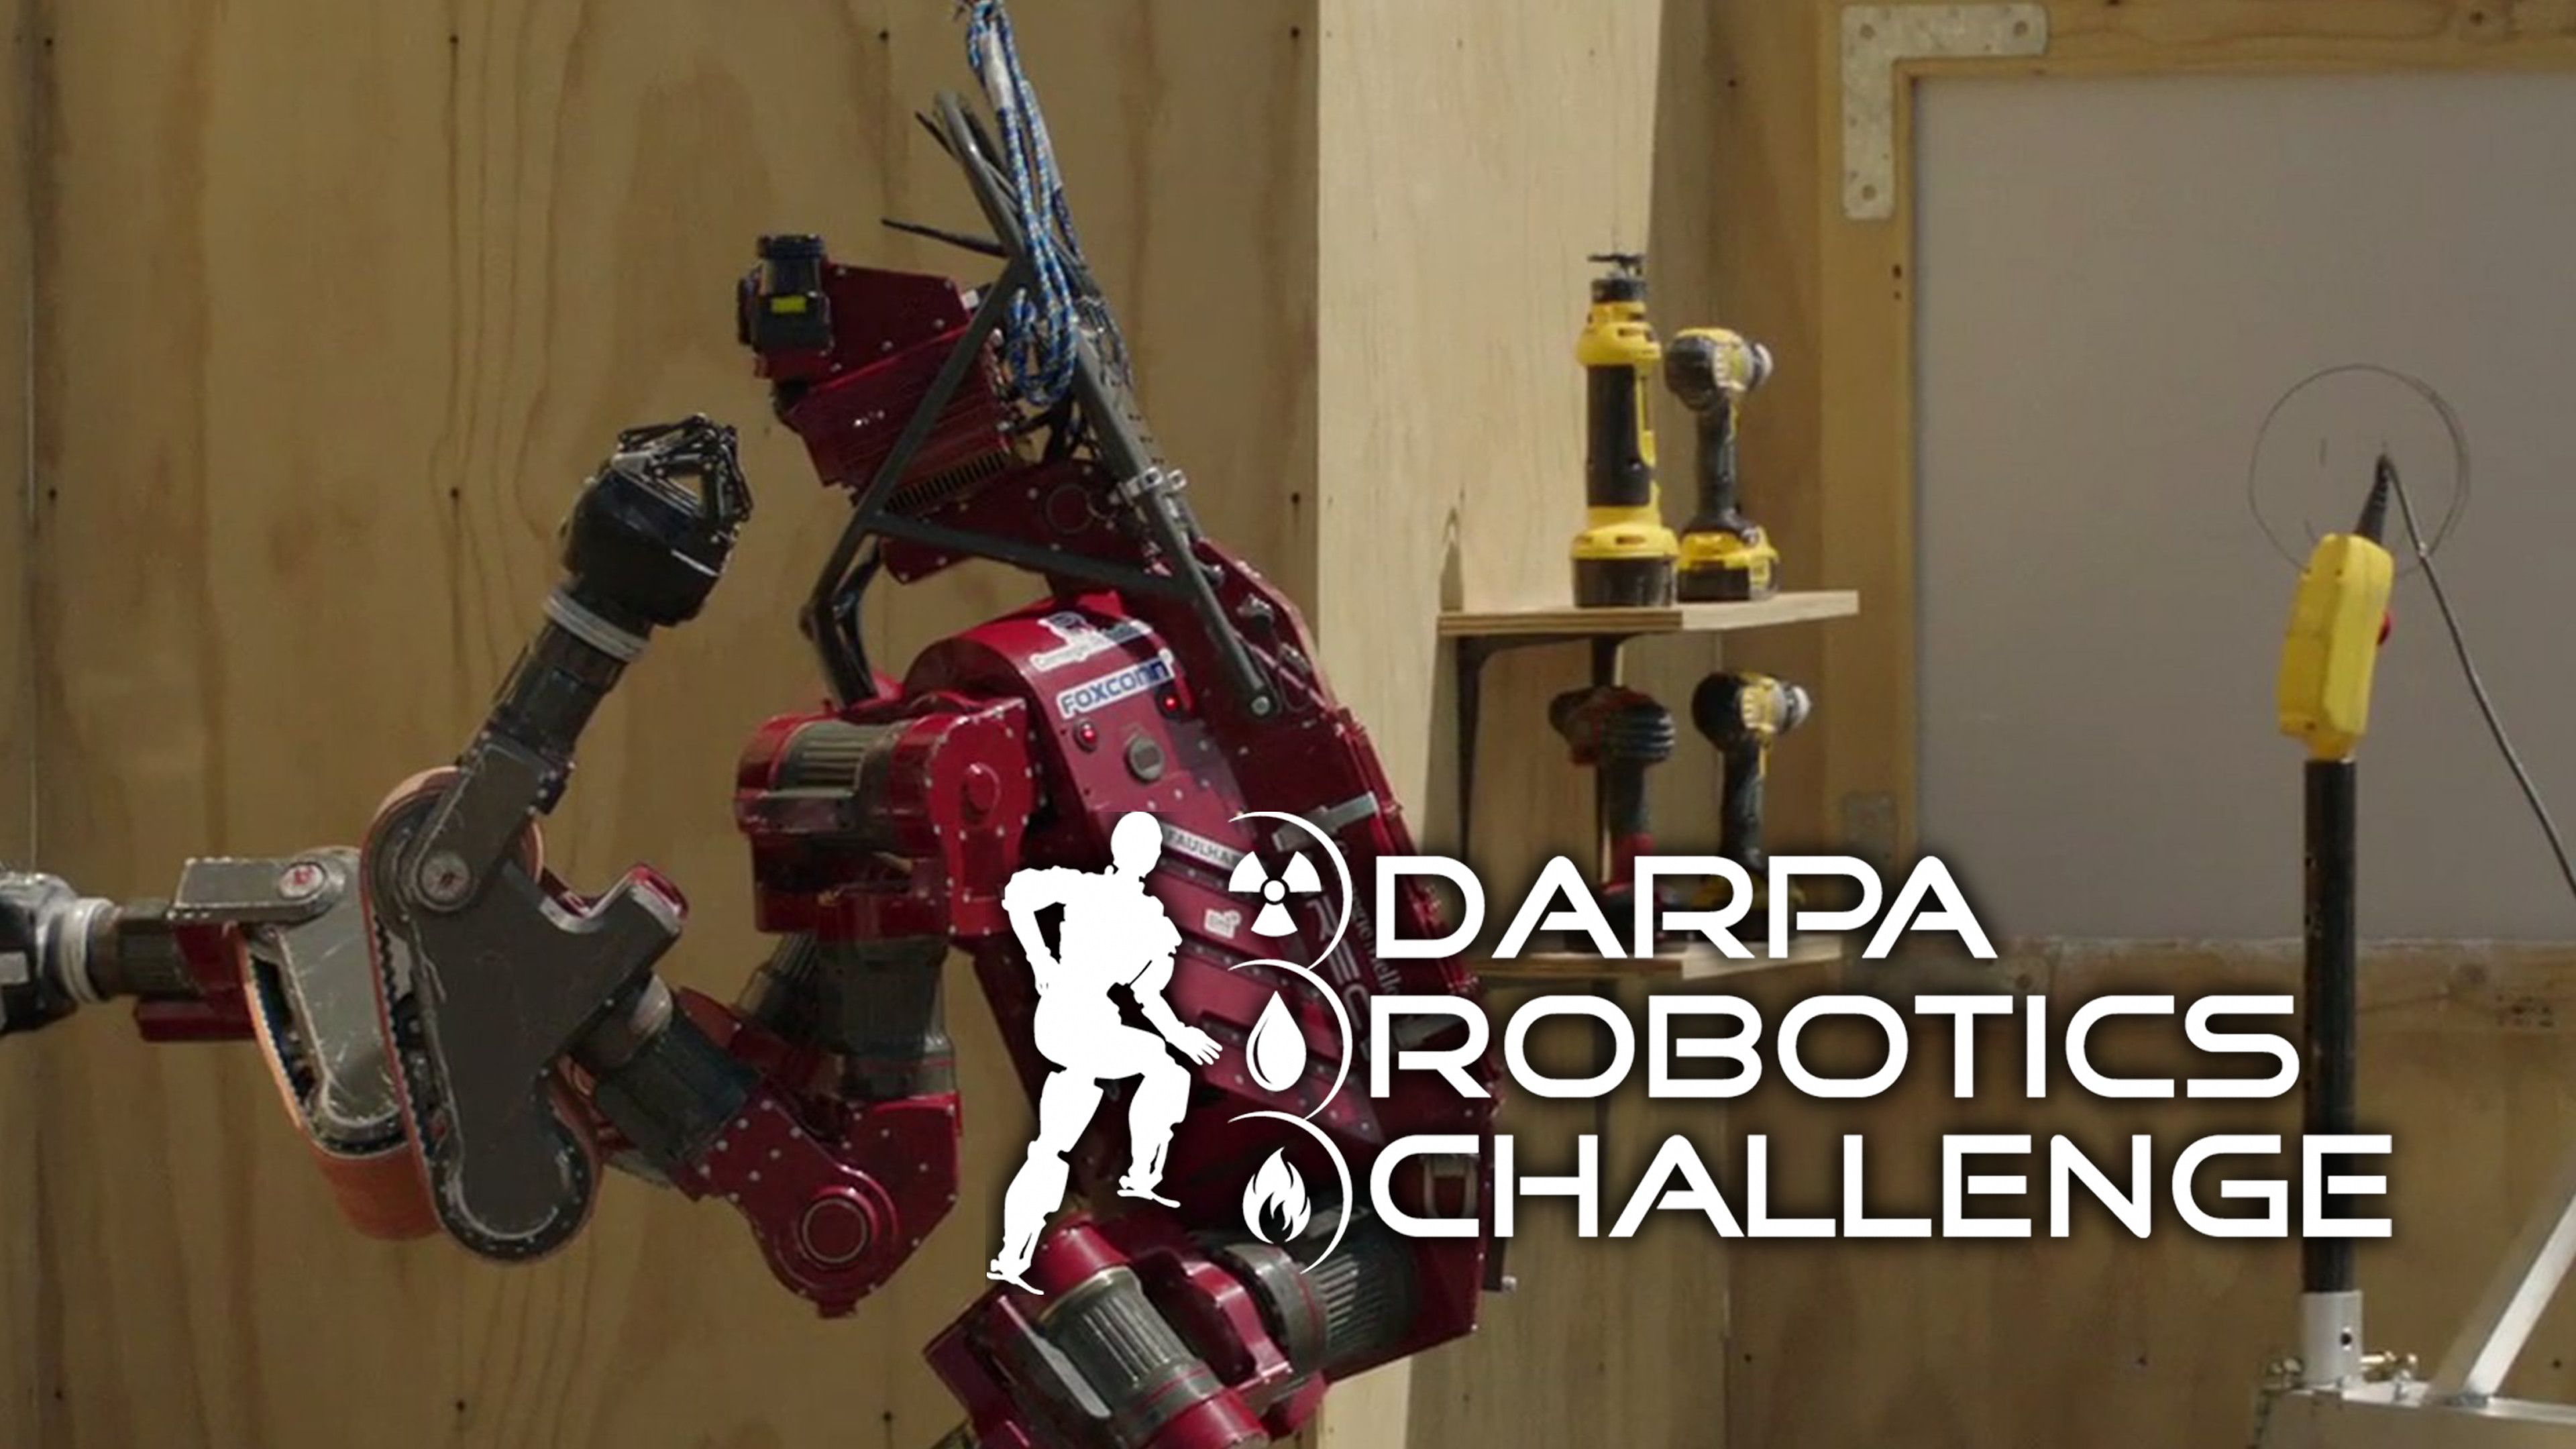 DARPA Robotics Challenge Tartan Rescue